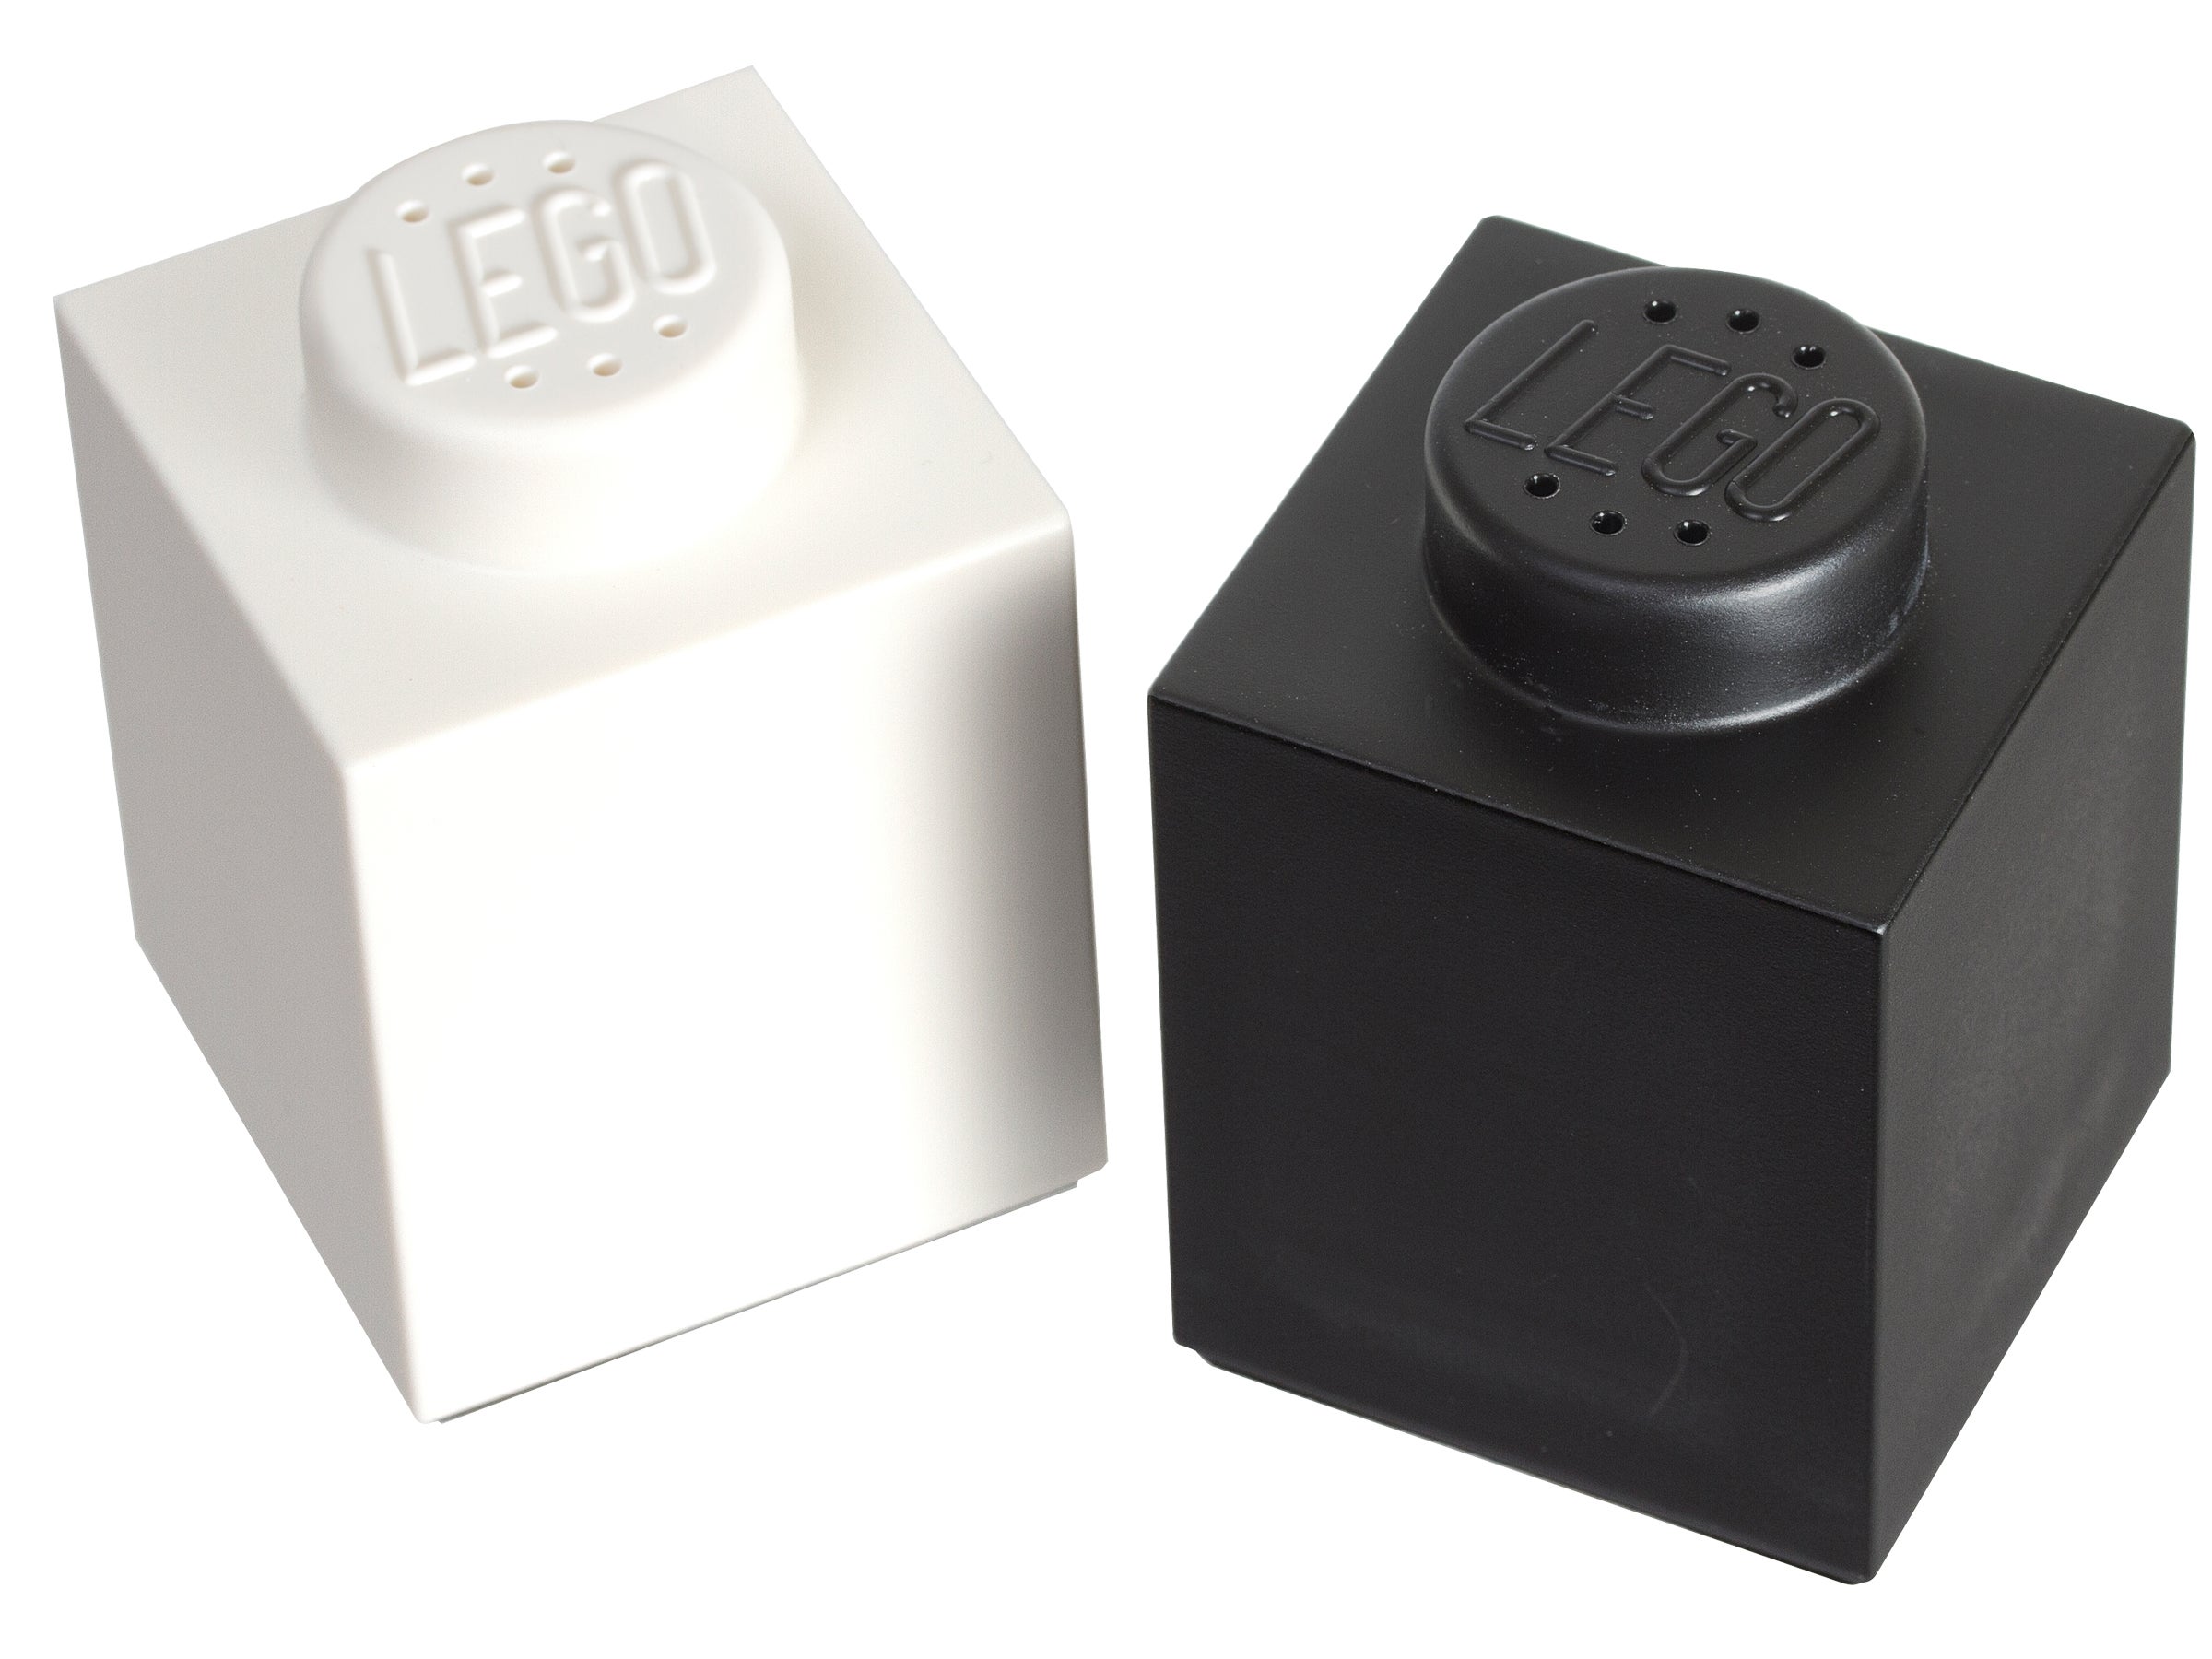 LEGO peper- en zoutstel